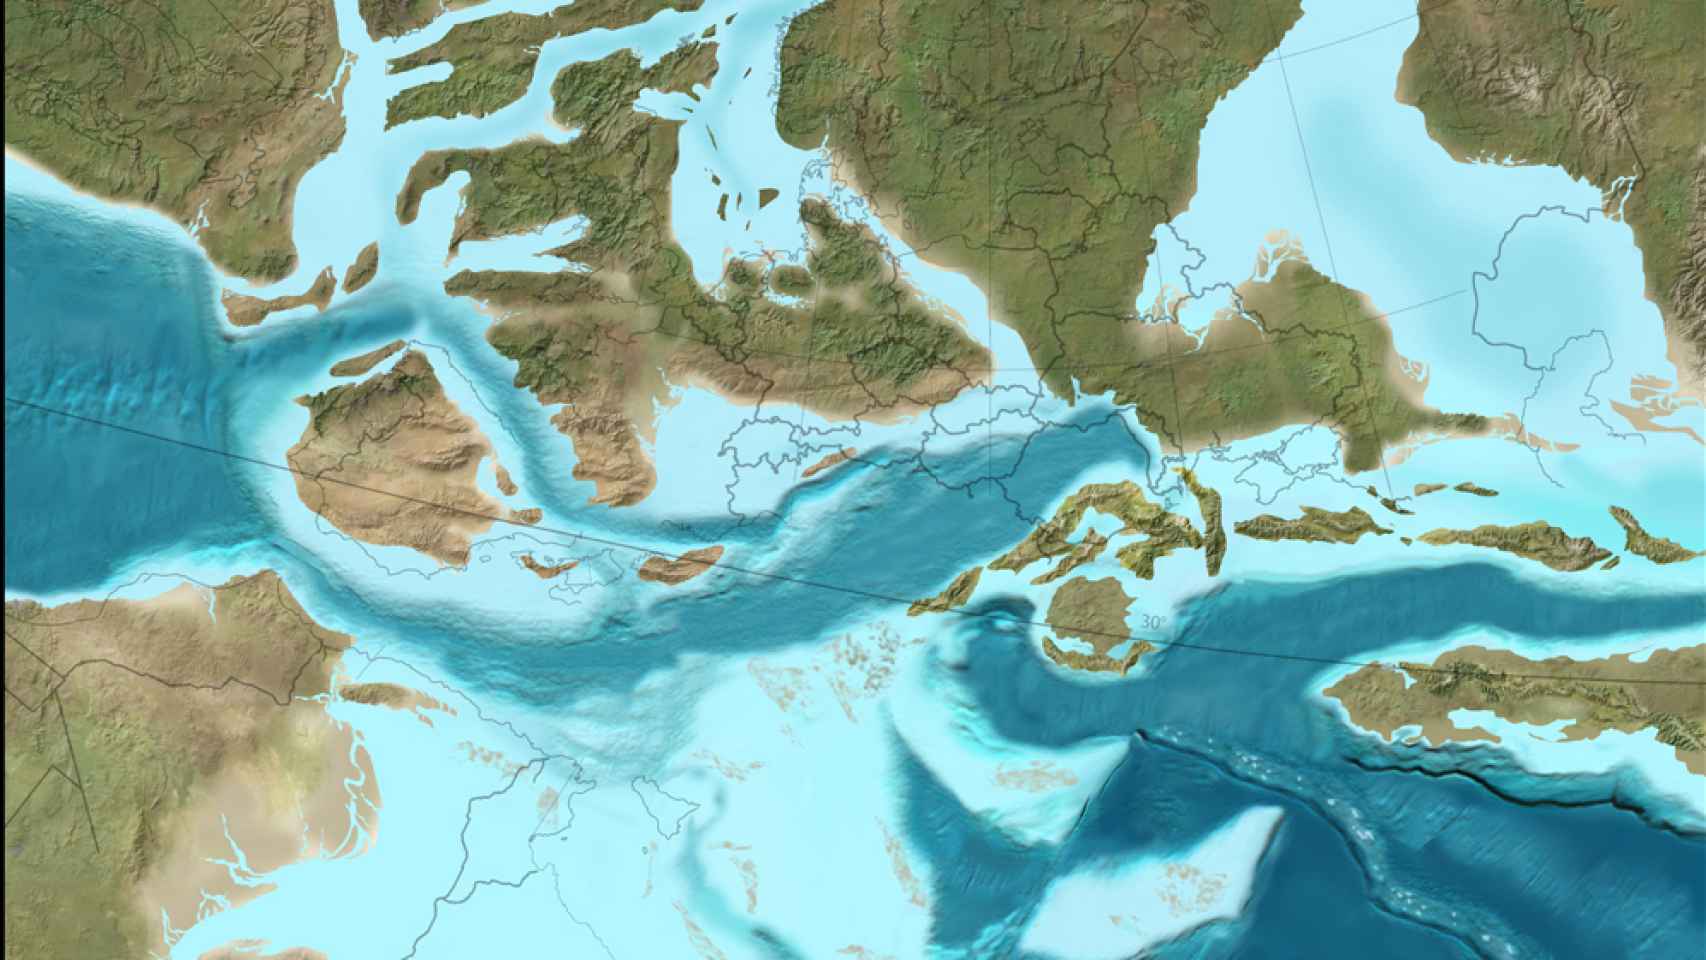 Europa en el Cretácico, en el centro y a la izquierda, la península ibérica.